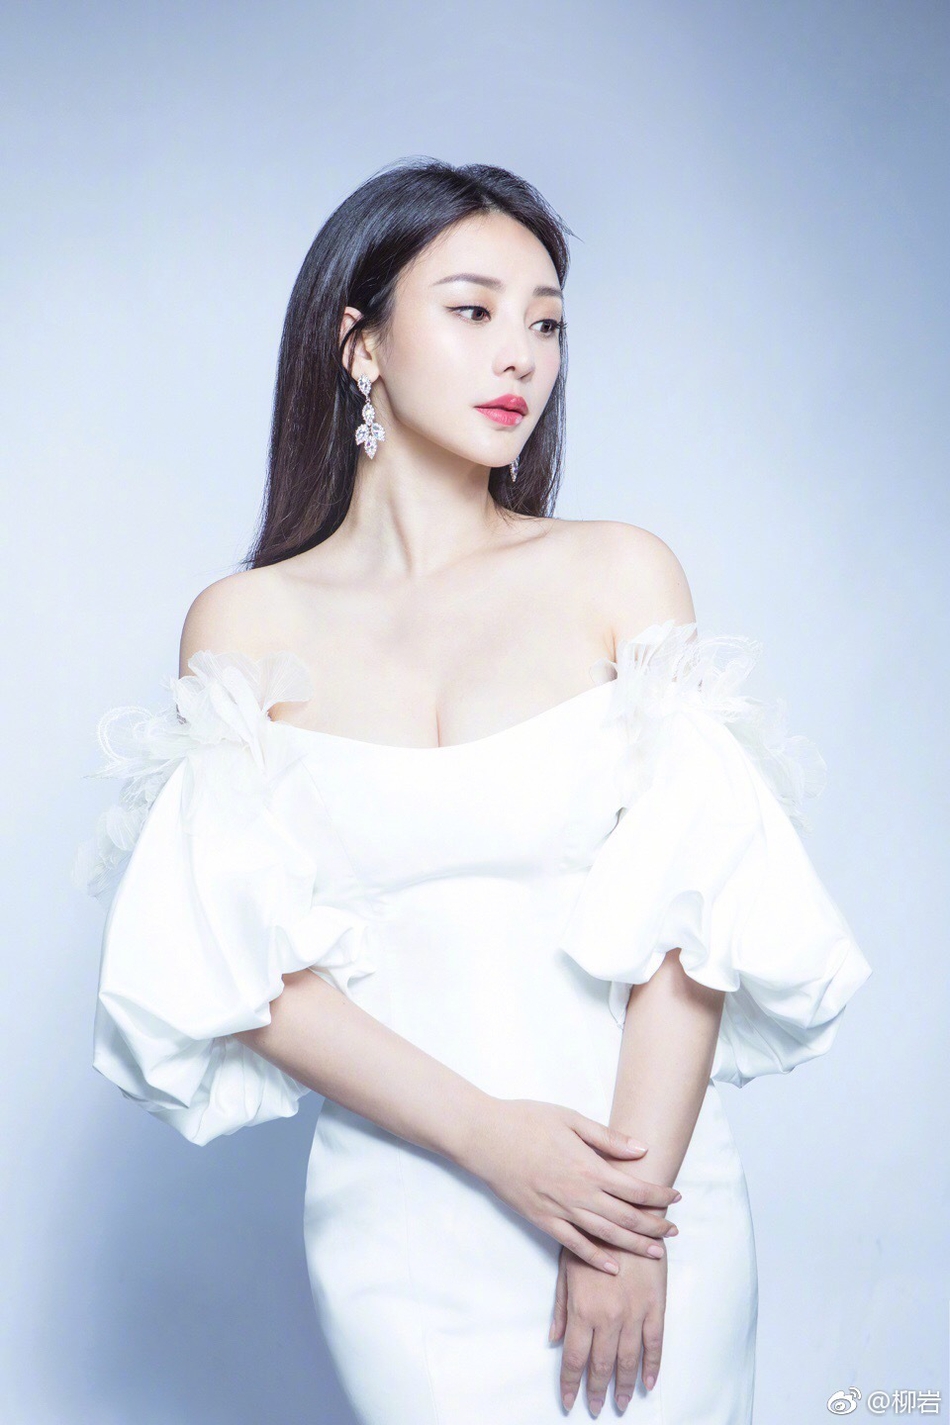 10月3日，柳岩微博晒出自己最新写真，配文“温不温油”。只见她身穿一字肩白裙，锁骨和傲人上围吸睛，身材火辣！